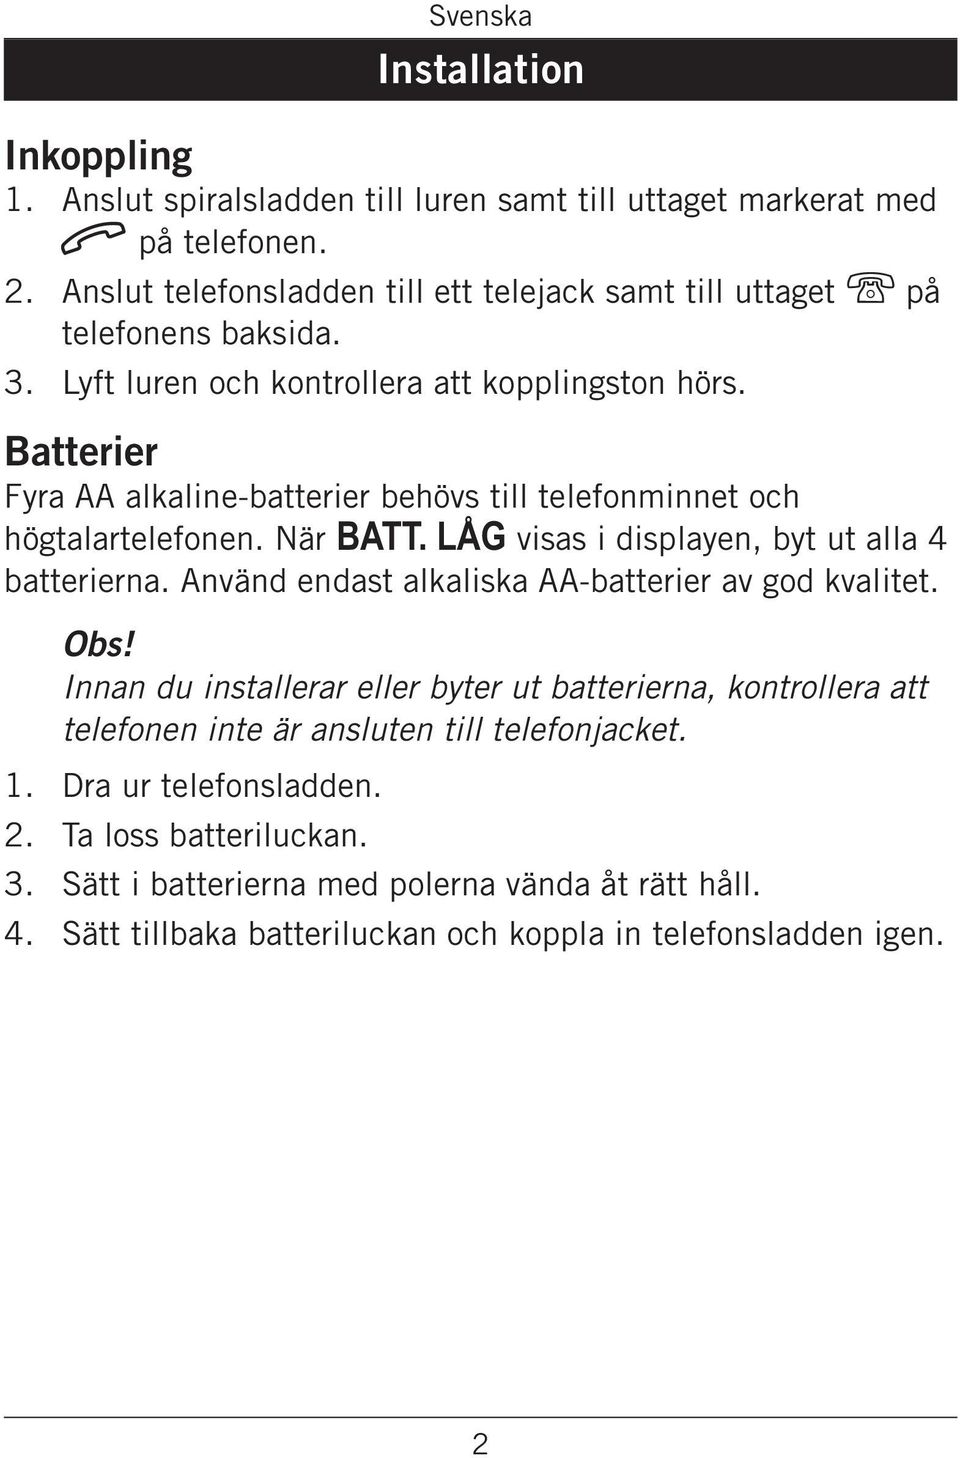 Batterier Fyra AA alkaline-batterier behövs till telefonminnet och högtalartelefonen. När BATT. LÅG visas i displayen, byt ut alla 4 batterierna.